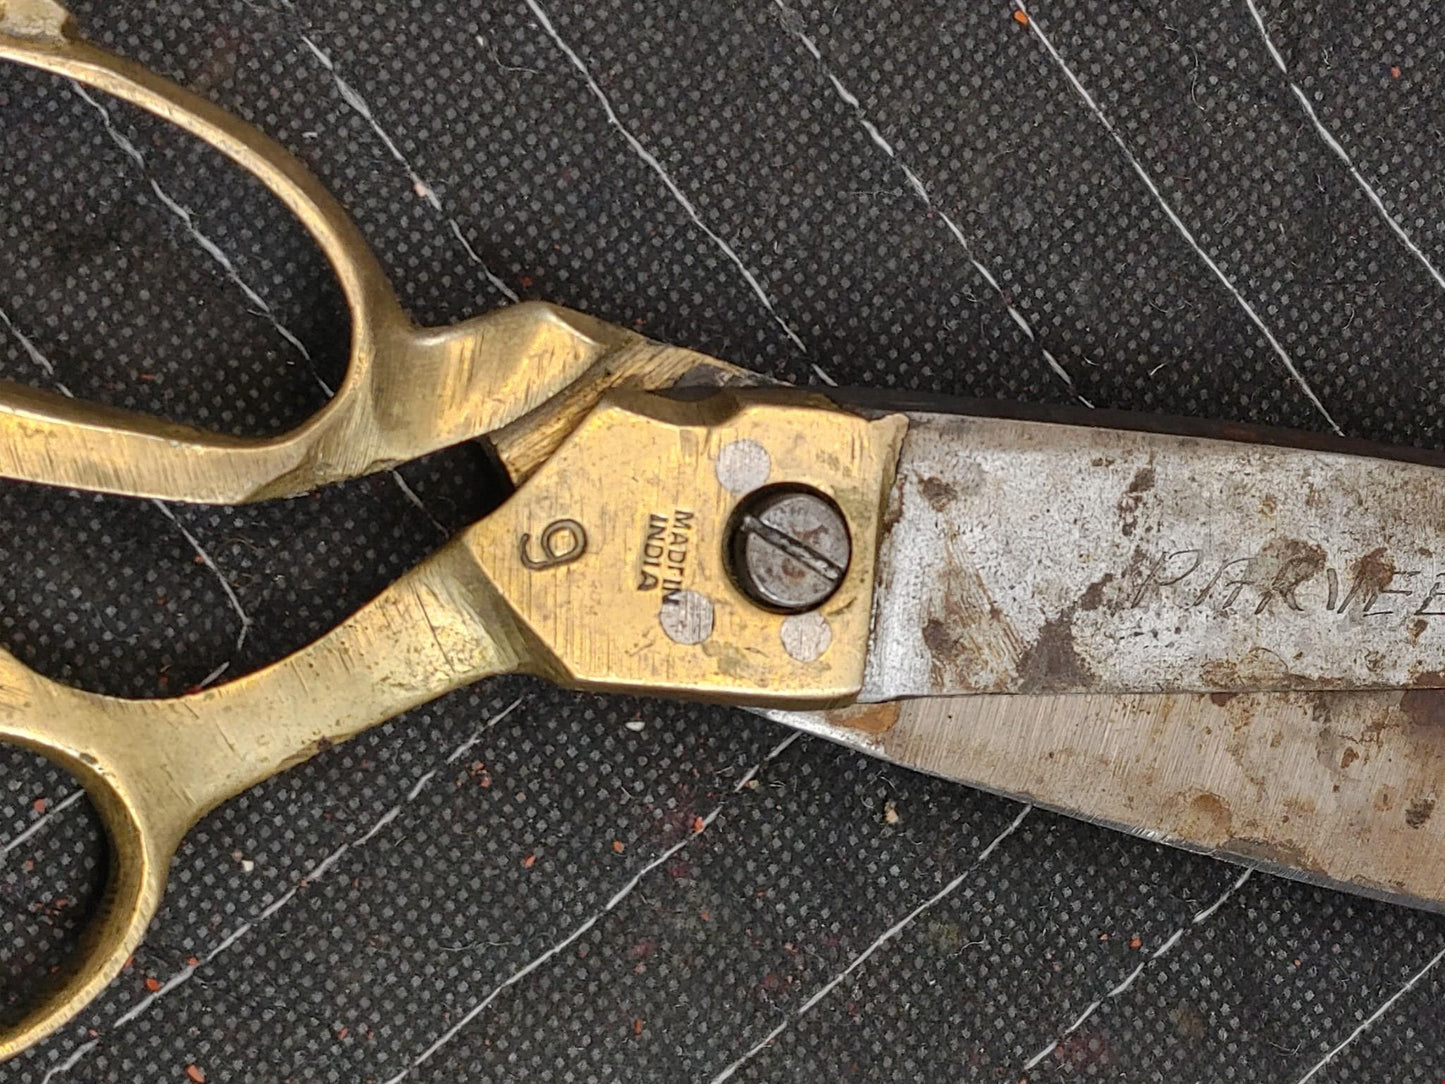 9" Parveen Brass & Steel Shear 4.5" blade - vintage scissor shears